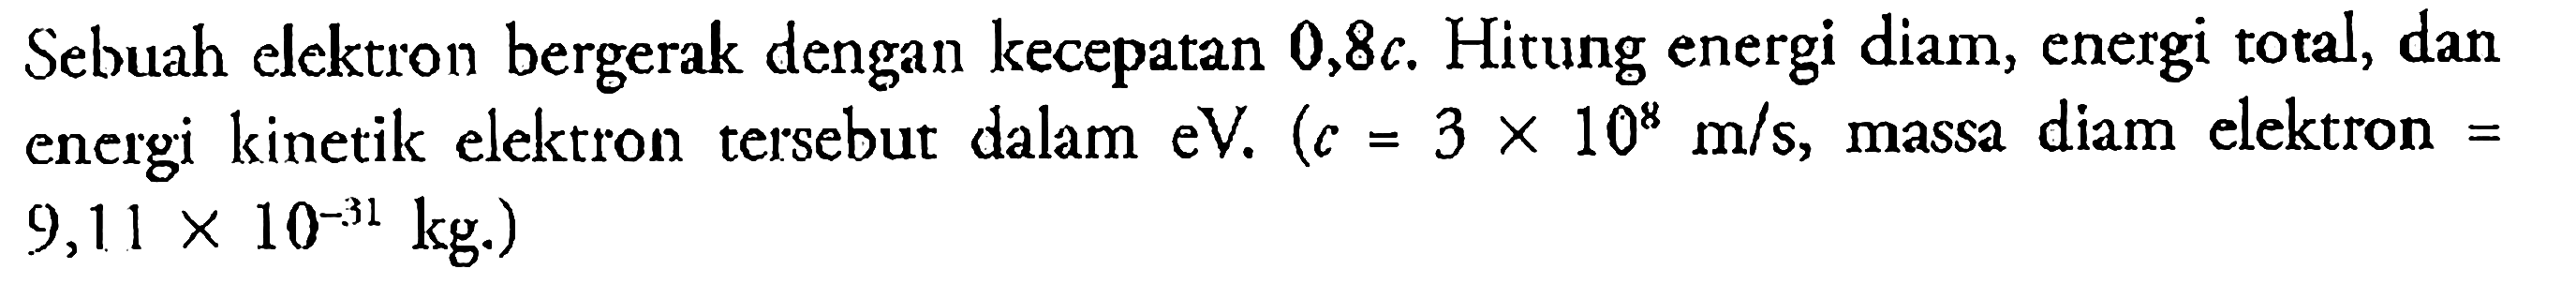 Sebuah elektron bergerak dengan kecepatan  0,8 c . Hitung energi diam, energi total, dan energi kinetik elektron tersebut dalam  eV. (c=3 x 10^8 m / s , massa diam elektron=9,11 x 10^-31 kg) 